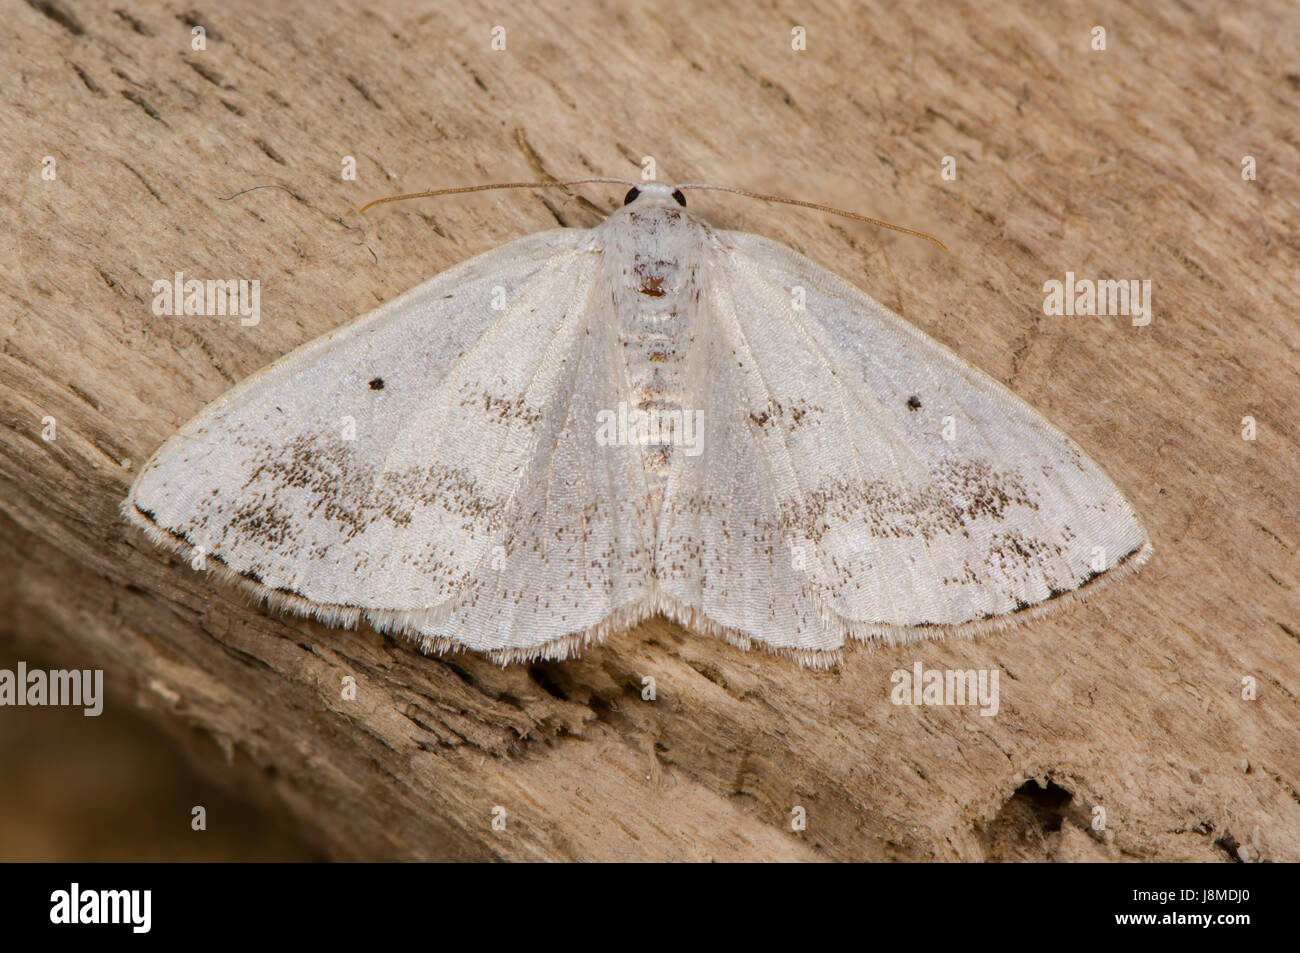 Lomographa temerata (argent assombries) papillon. Insectes britannique de la famille des Geometridés, geometer papillons de nuit, au repos sur bois Banque D'Images